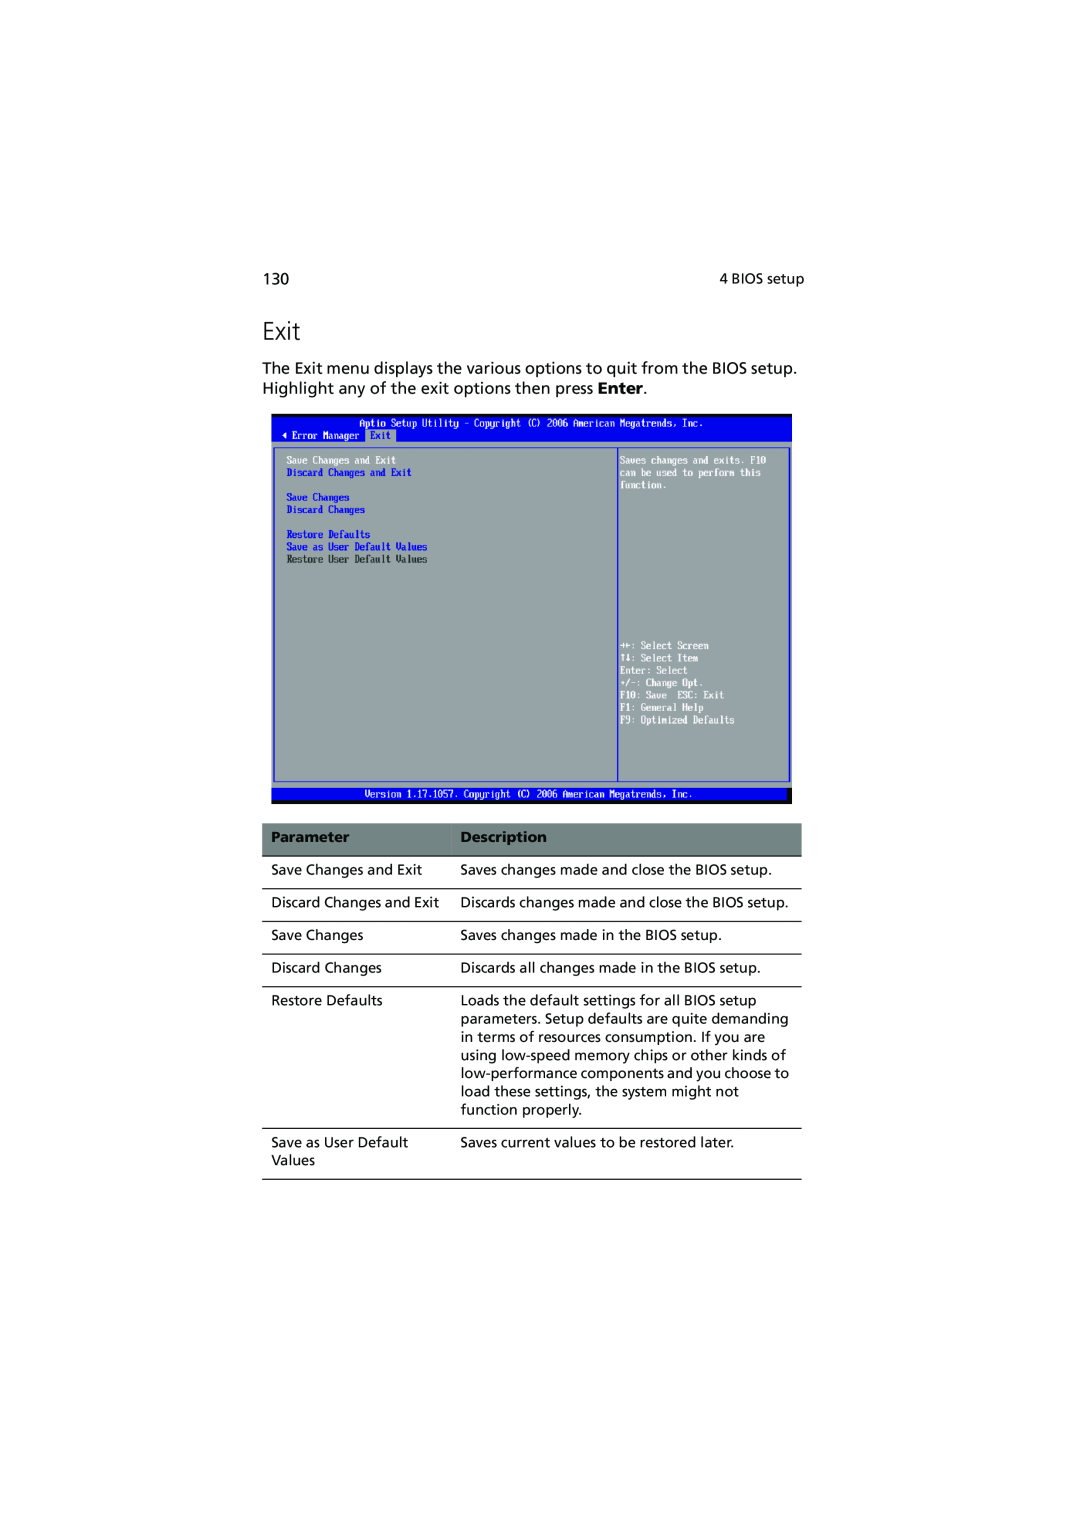 Acer R720 Series manual Exit, Parameter, Description 